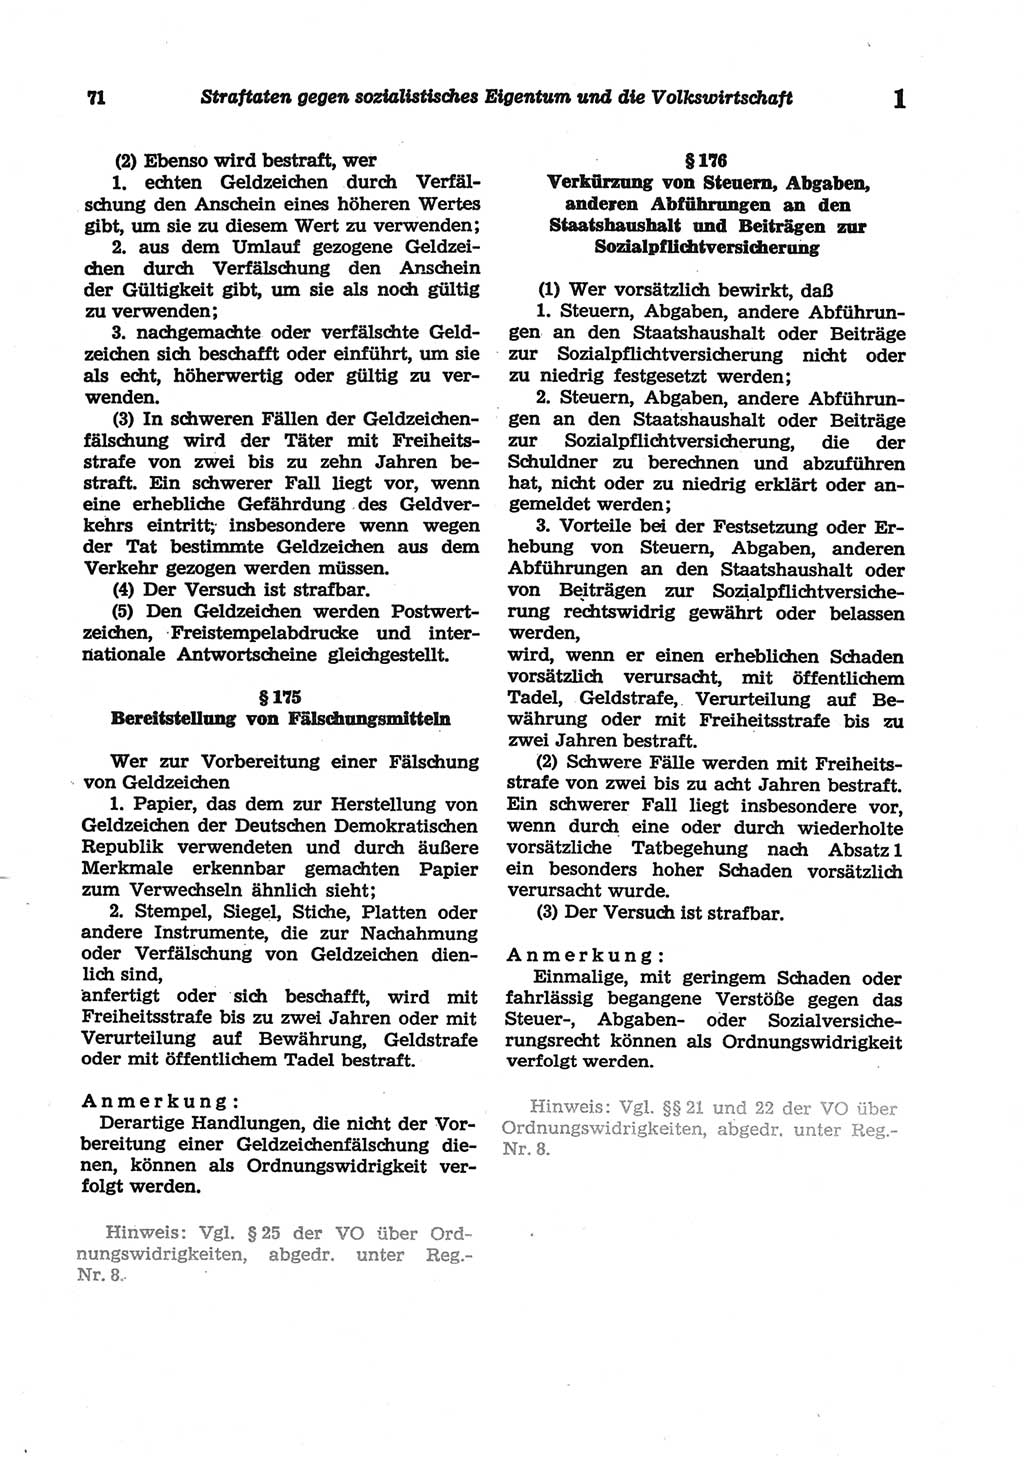 Strafgesetzbuch (StGB) der Deutschen Demokratischen Republik (DDR) und angrenzende Gesetze und Bestimmungen 1977, Seite 71 (StGB DDR Ges. Best. 1977, S. 71)